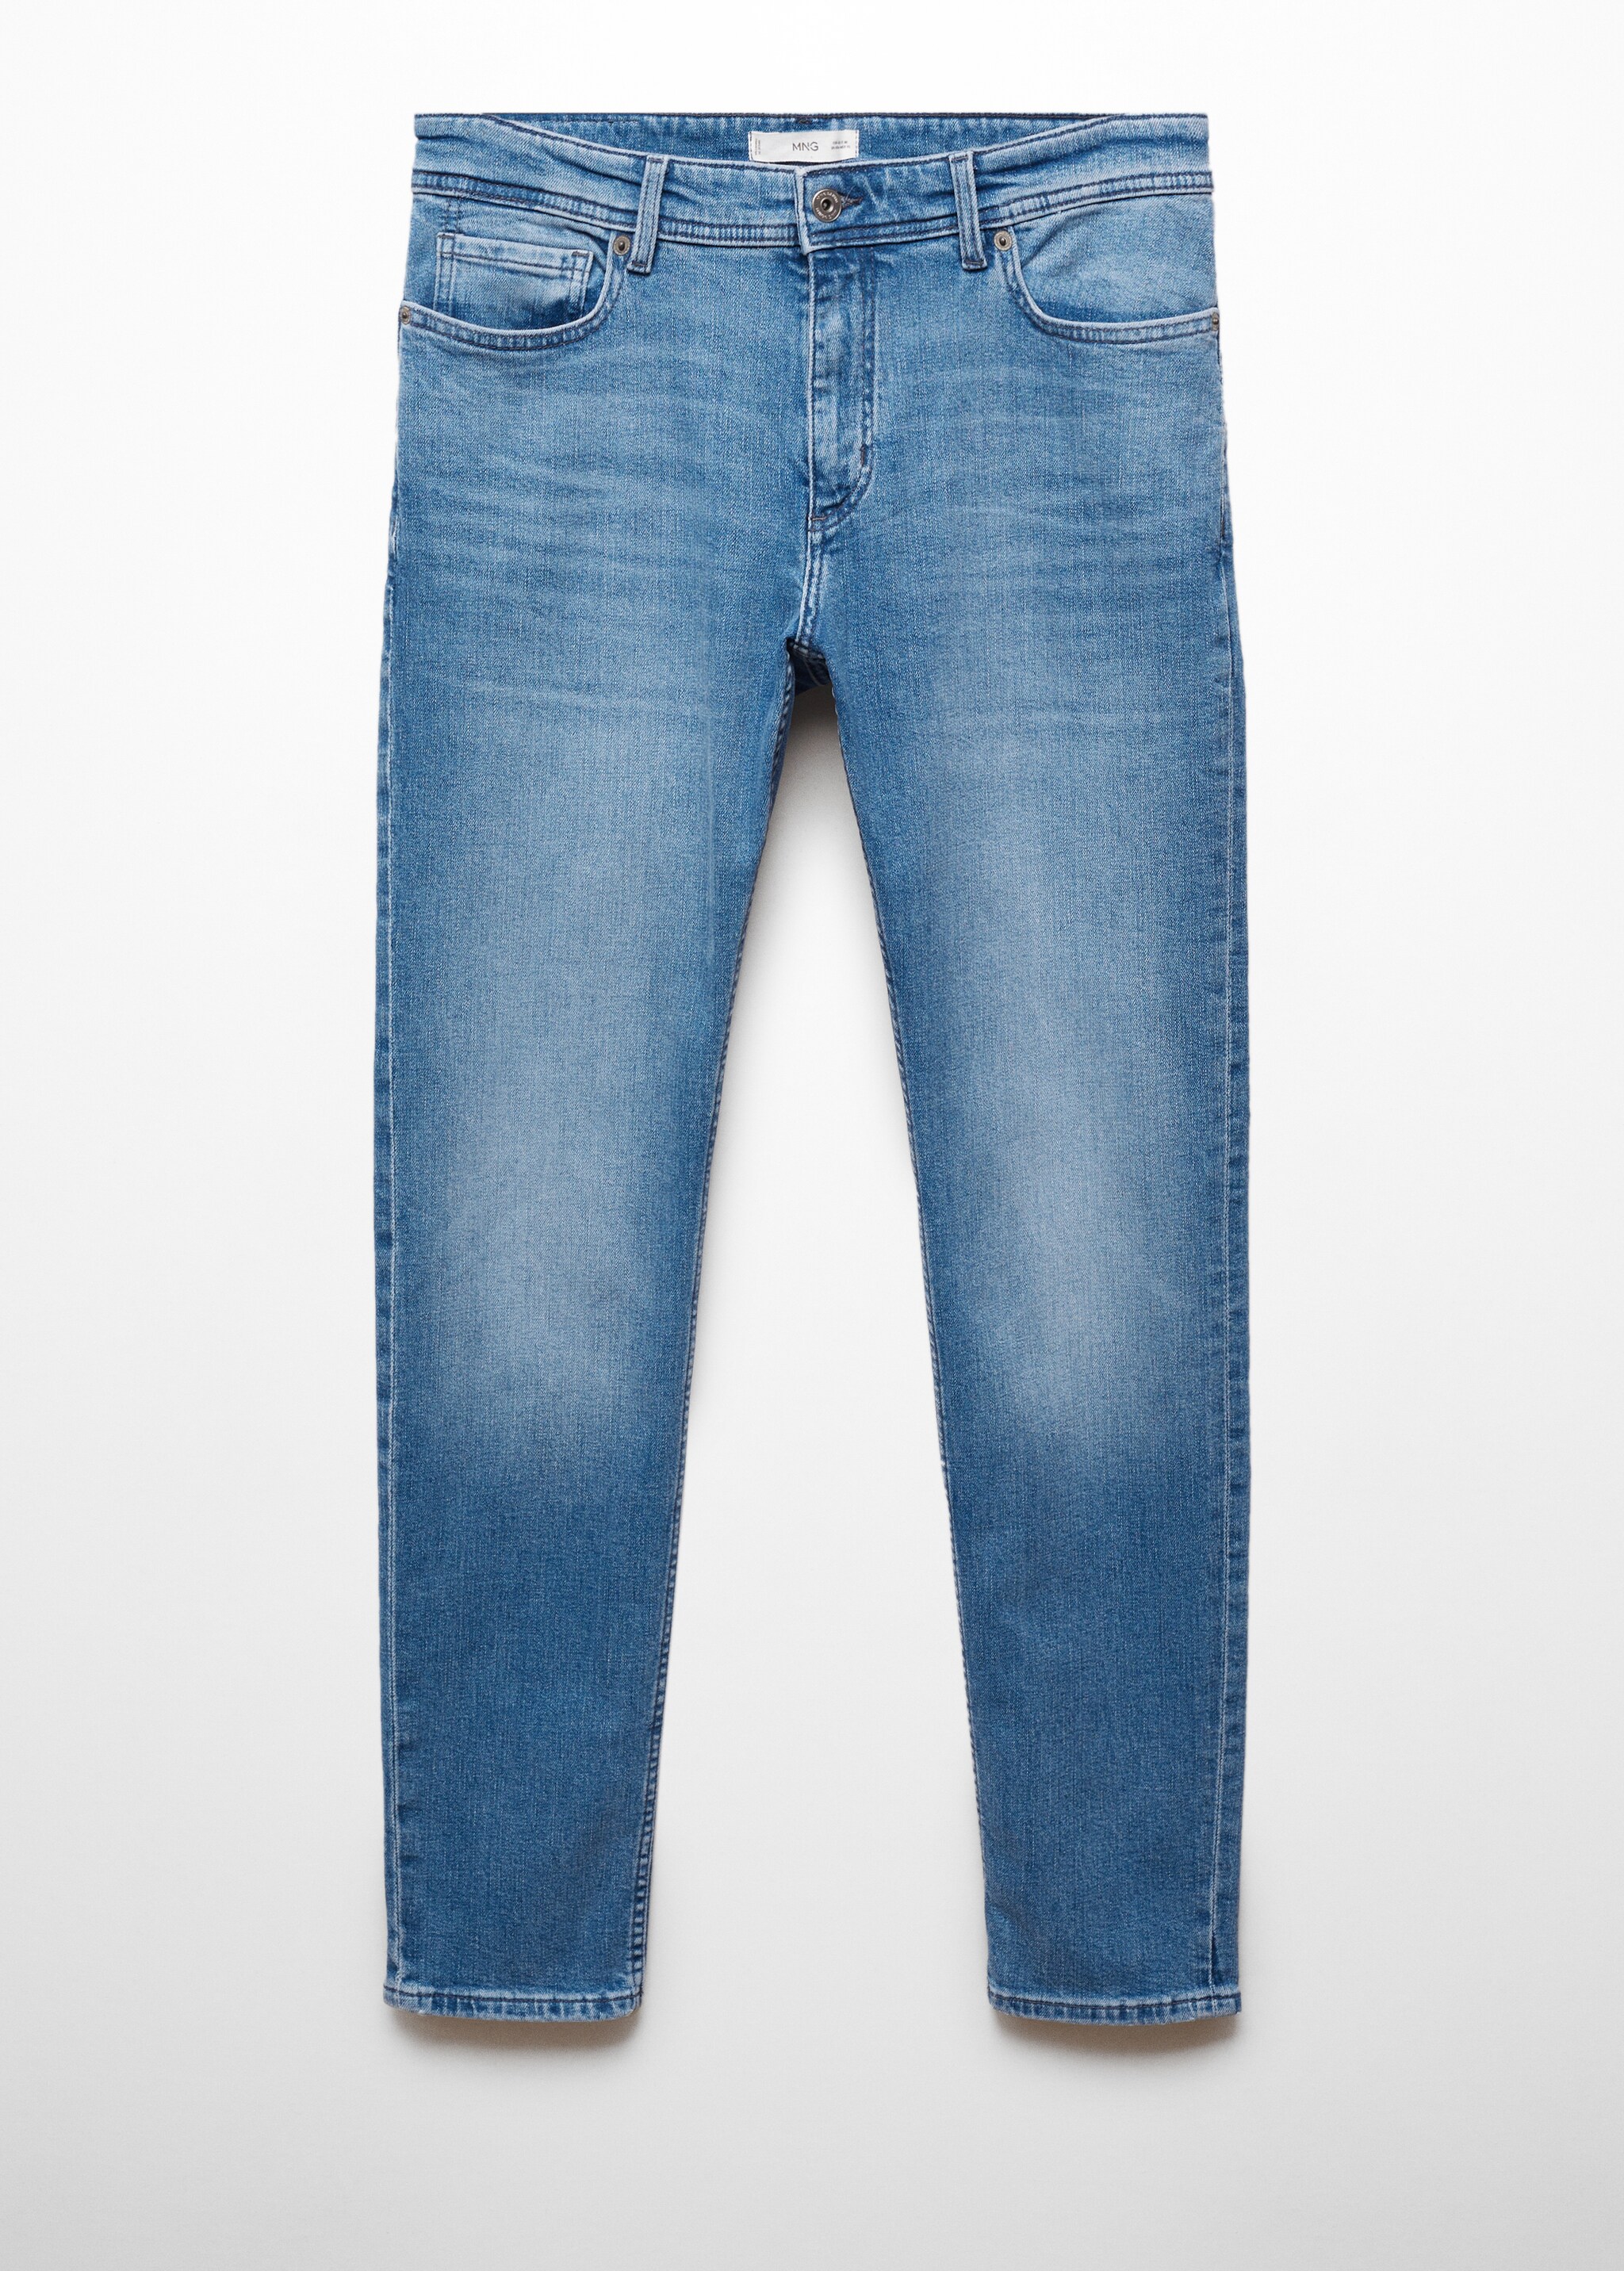 Jeans Jan slim fit - Artigo sem modelo